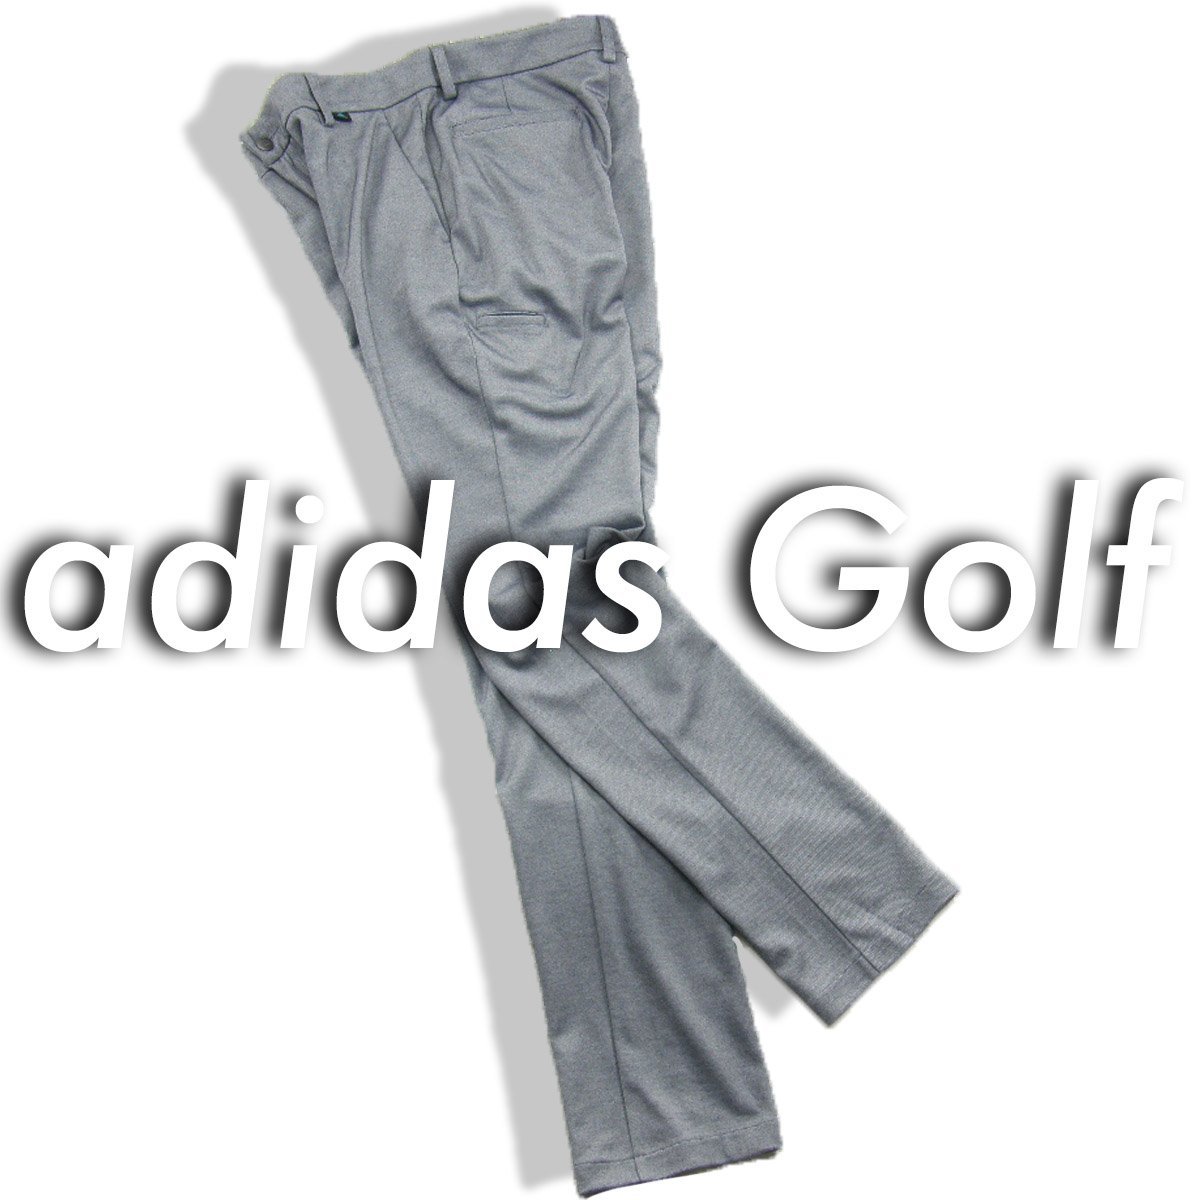  новый товар Adidas Golf [ всесезонный ] джерси стрейч брюки 88 темно-синий me Ran ji*352054 adidas GOLF EX STRETCH